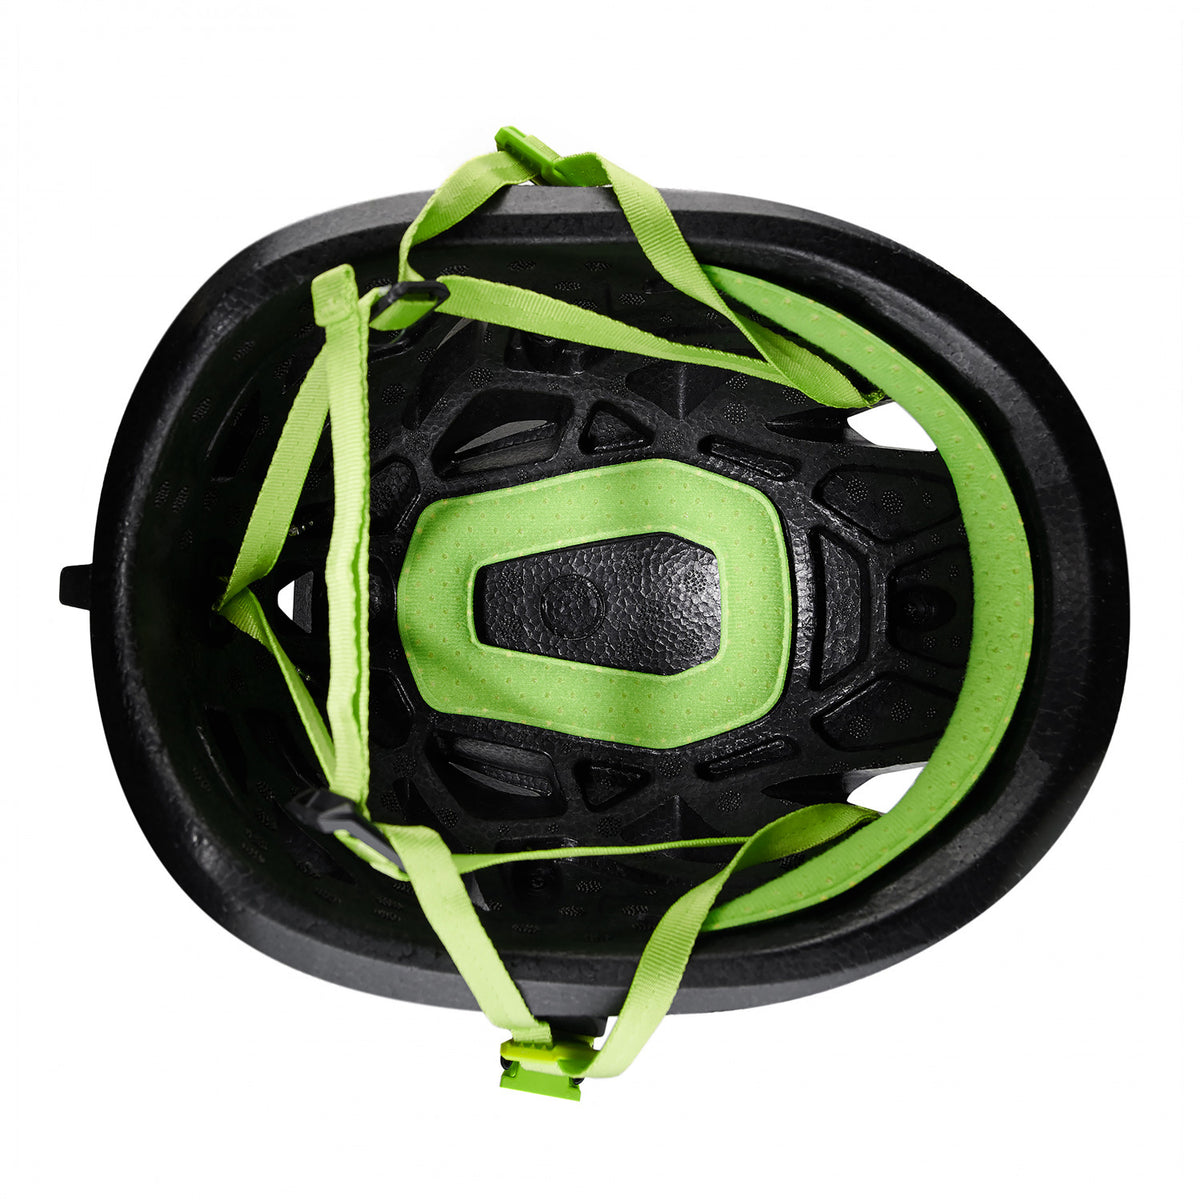 Inside of Edelrid Salathe Helmet in Black &amp; Green colours